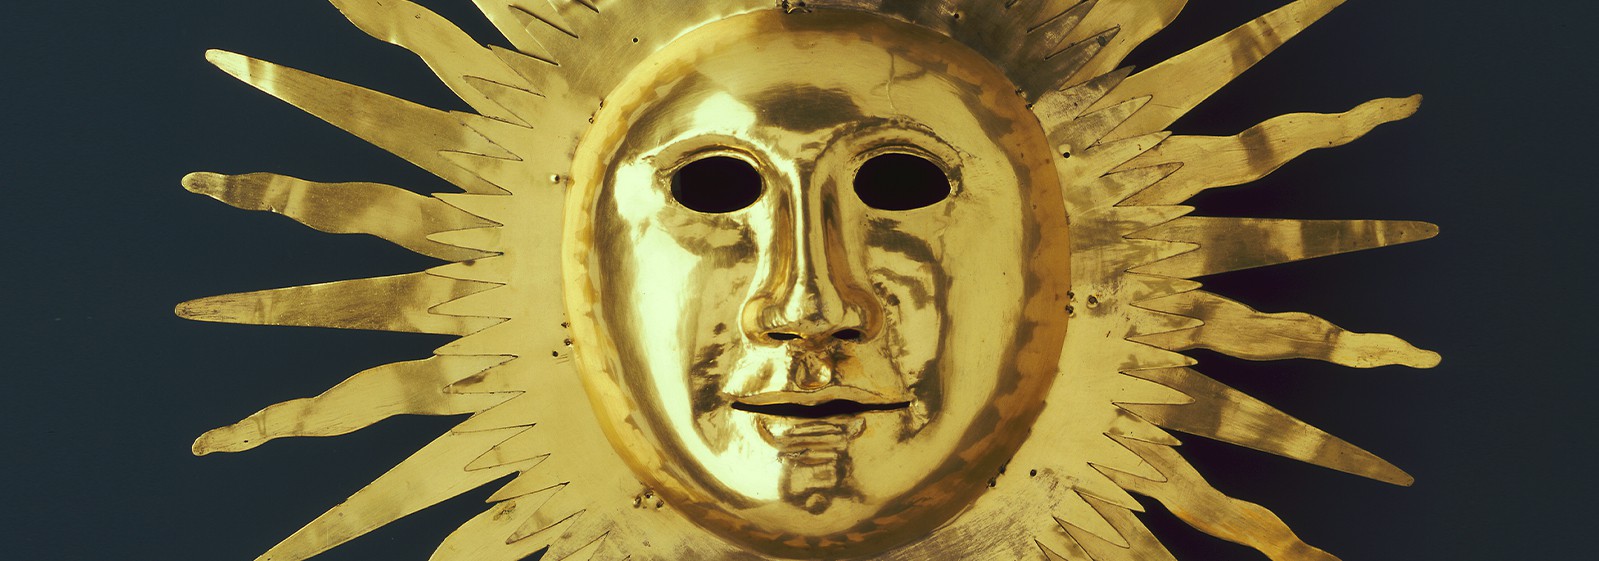 Złota maska słońce z podobizną króla Augusta II przedstawiona na granatowym tle. 